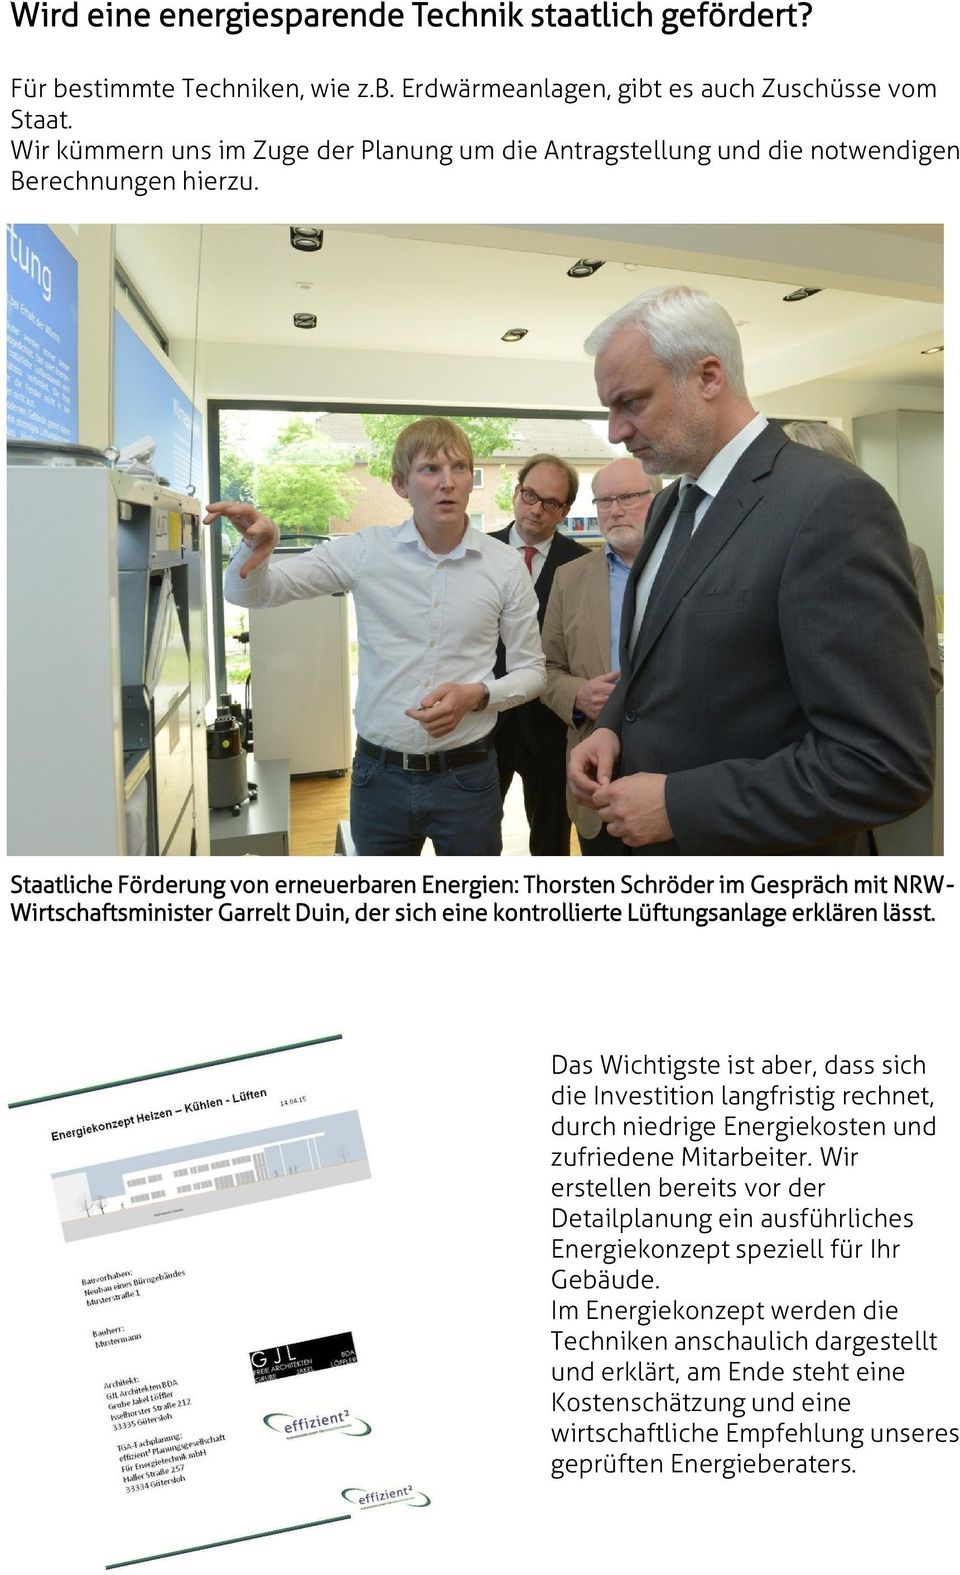 Staatliche Förderung von erneuerbaren Energien: Thorsten Schröder im Gespräch mit NRW- Wirtschaftsminister Garrelt Duin, der sich eine kontrollierte Lüftungsanlage erklären lässt.